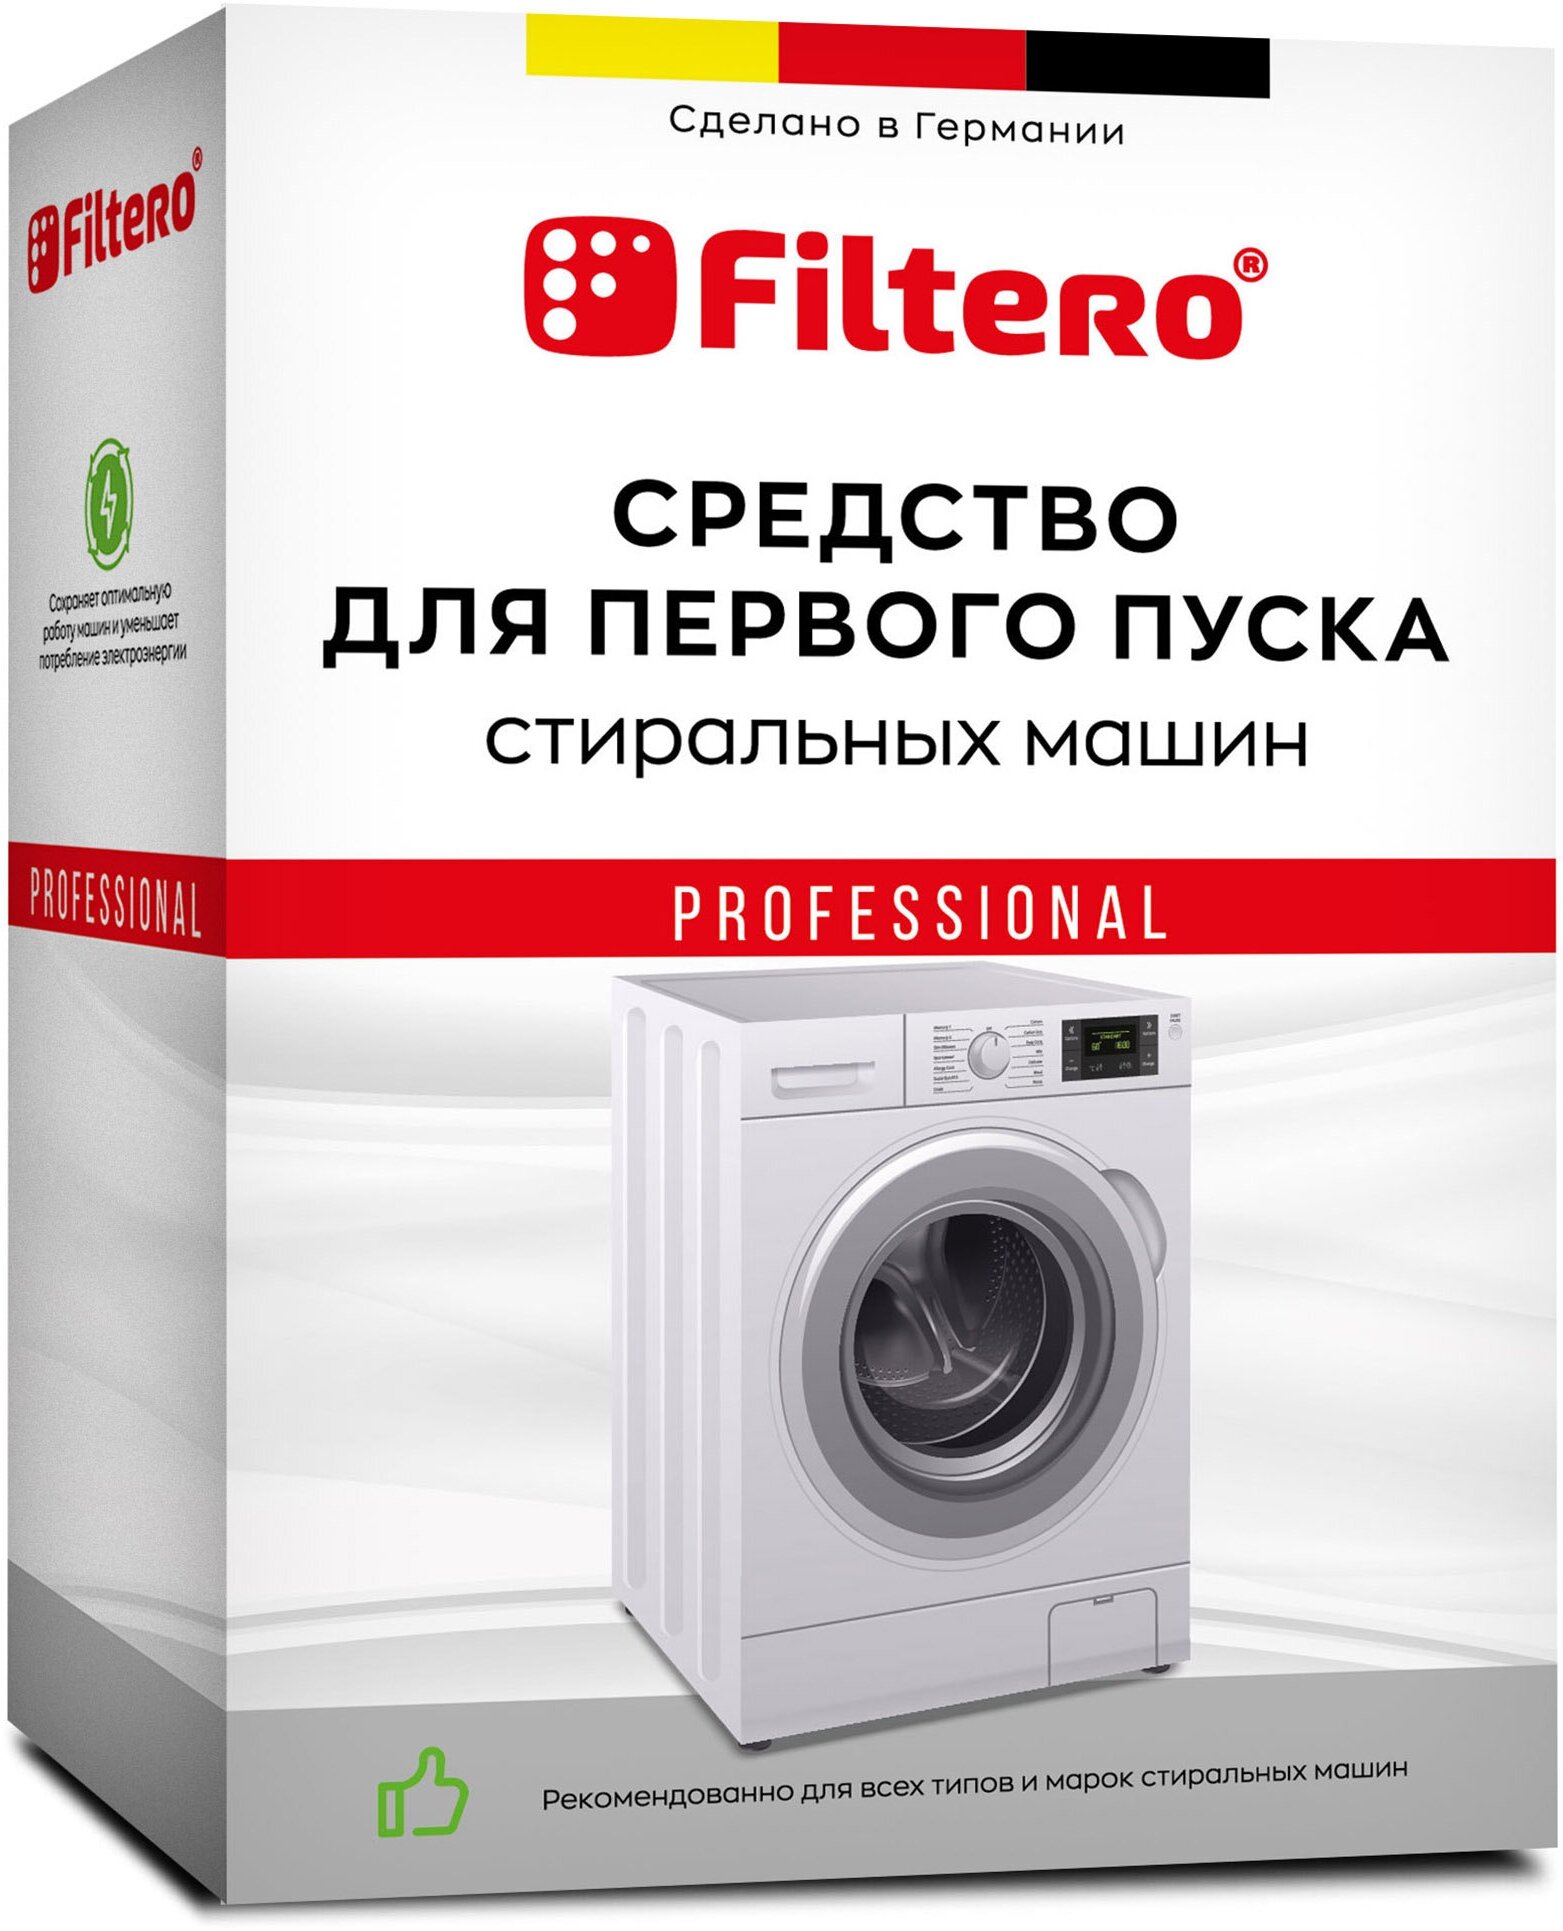 Filtero Средство для первого запуска стиральных машин